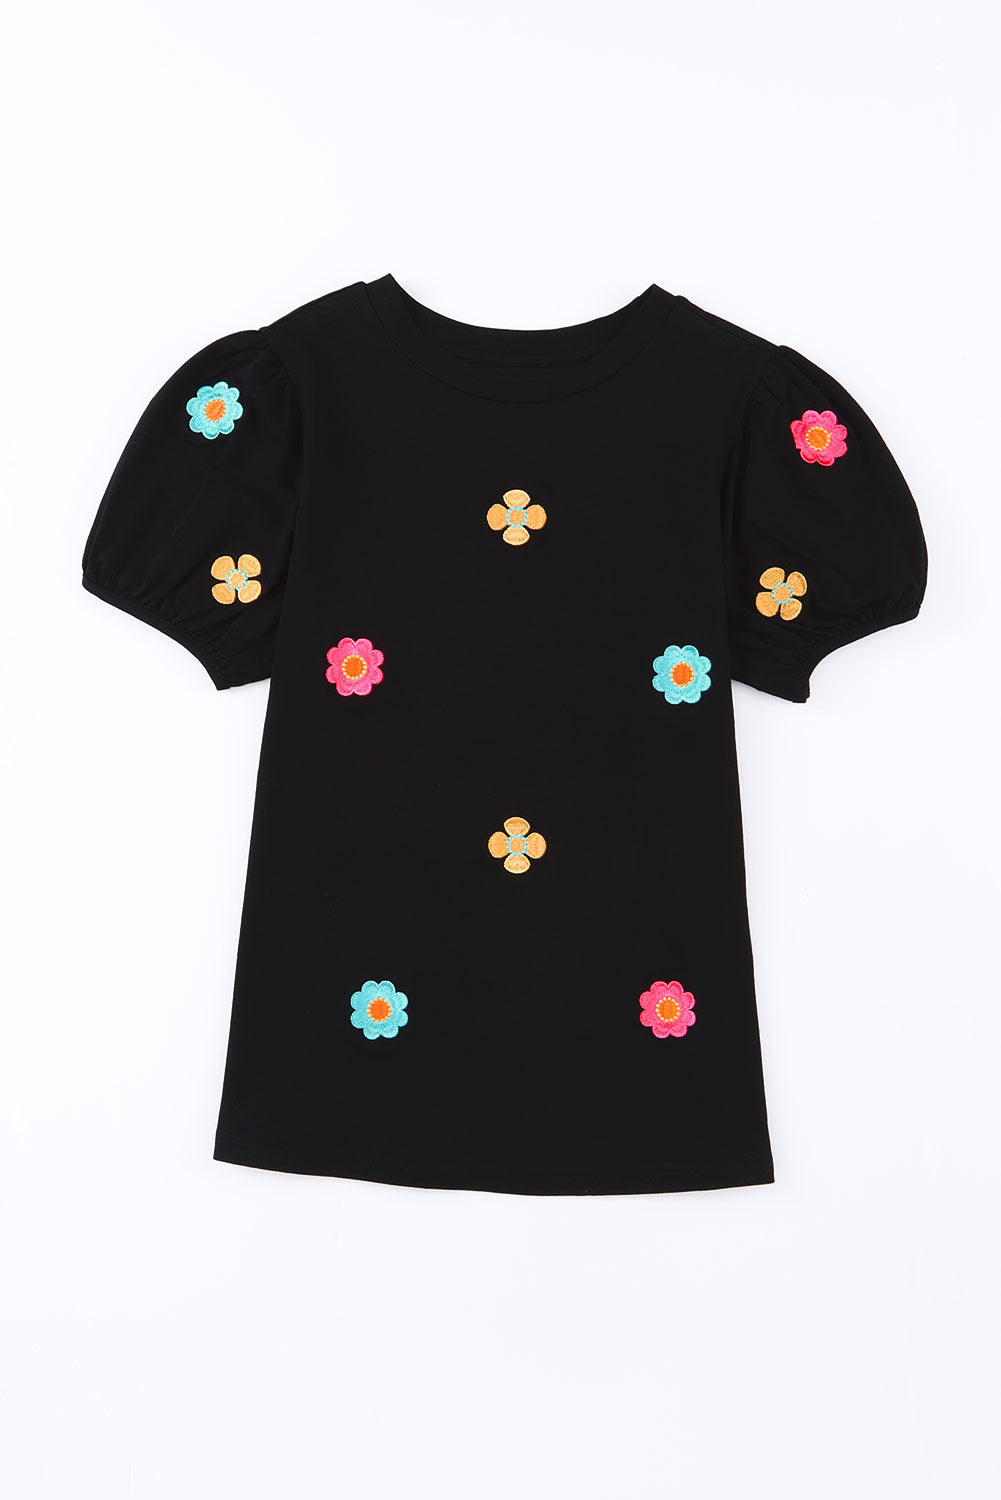 T-shirt noir à manches courtes bouffantes et fleurs brodées